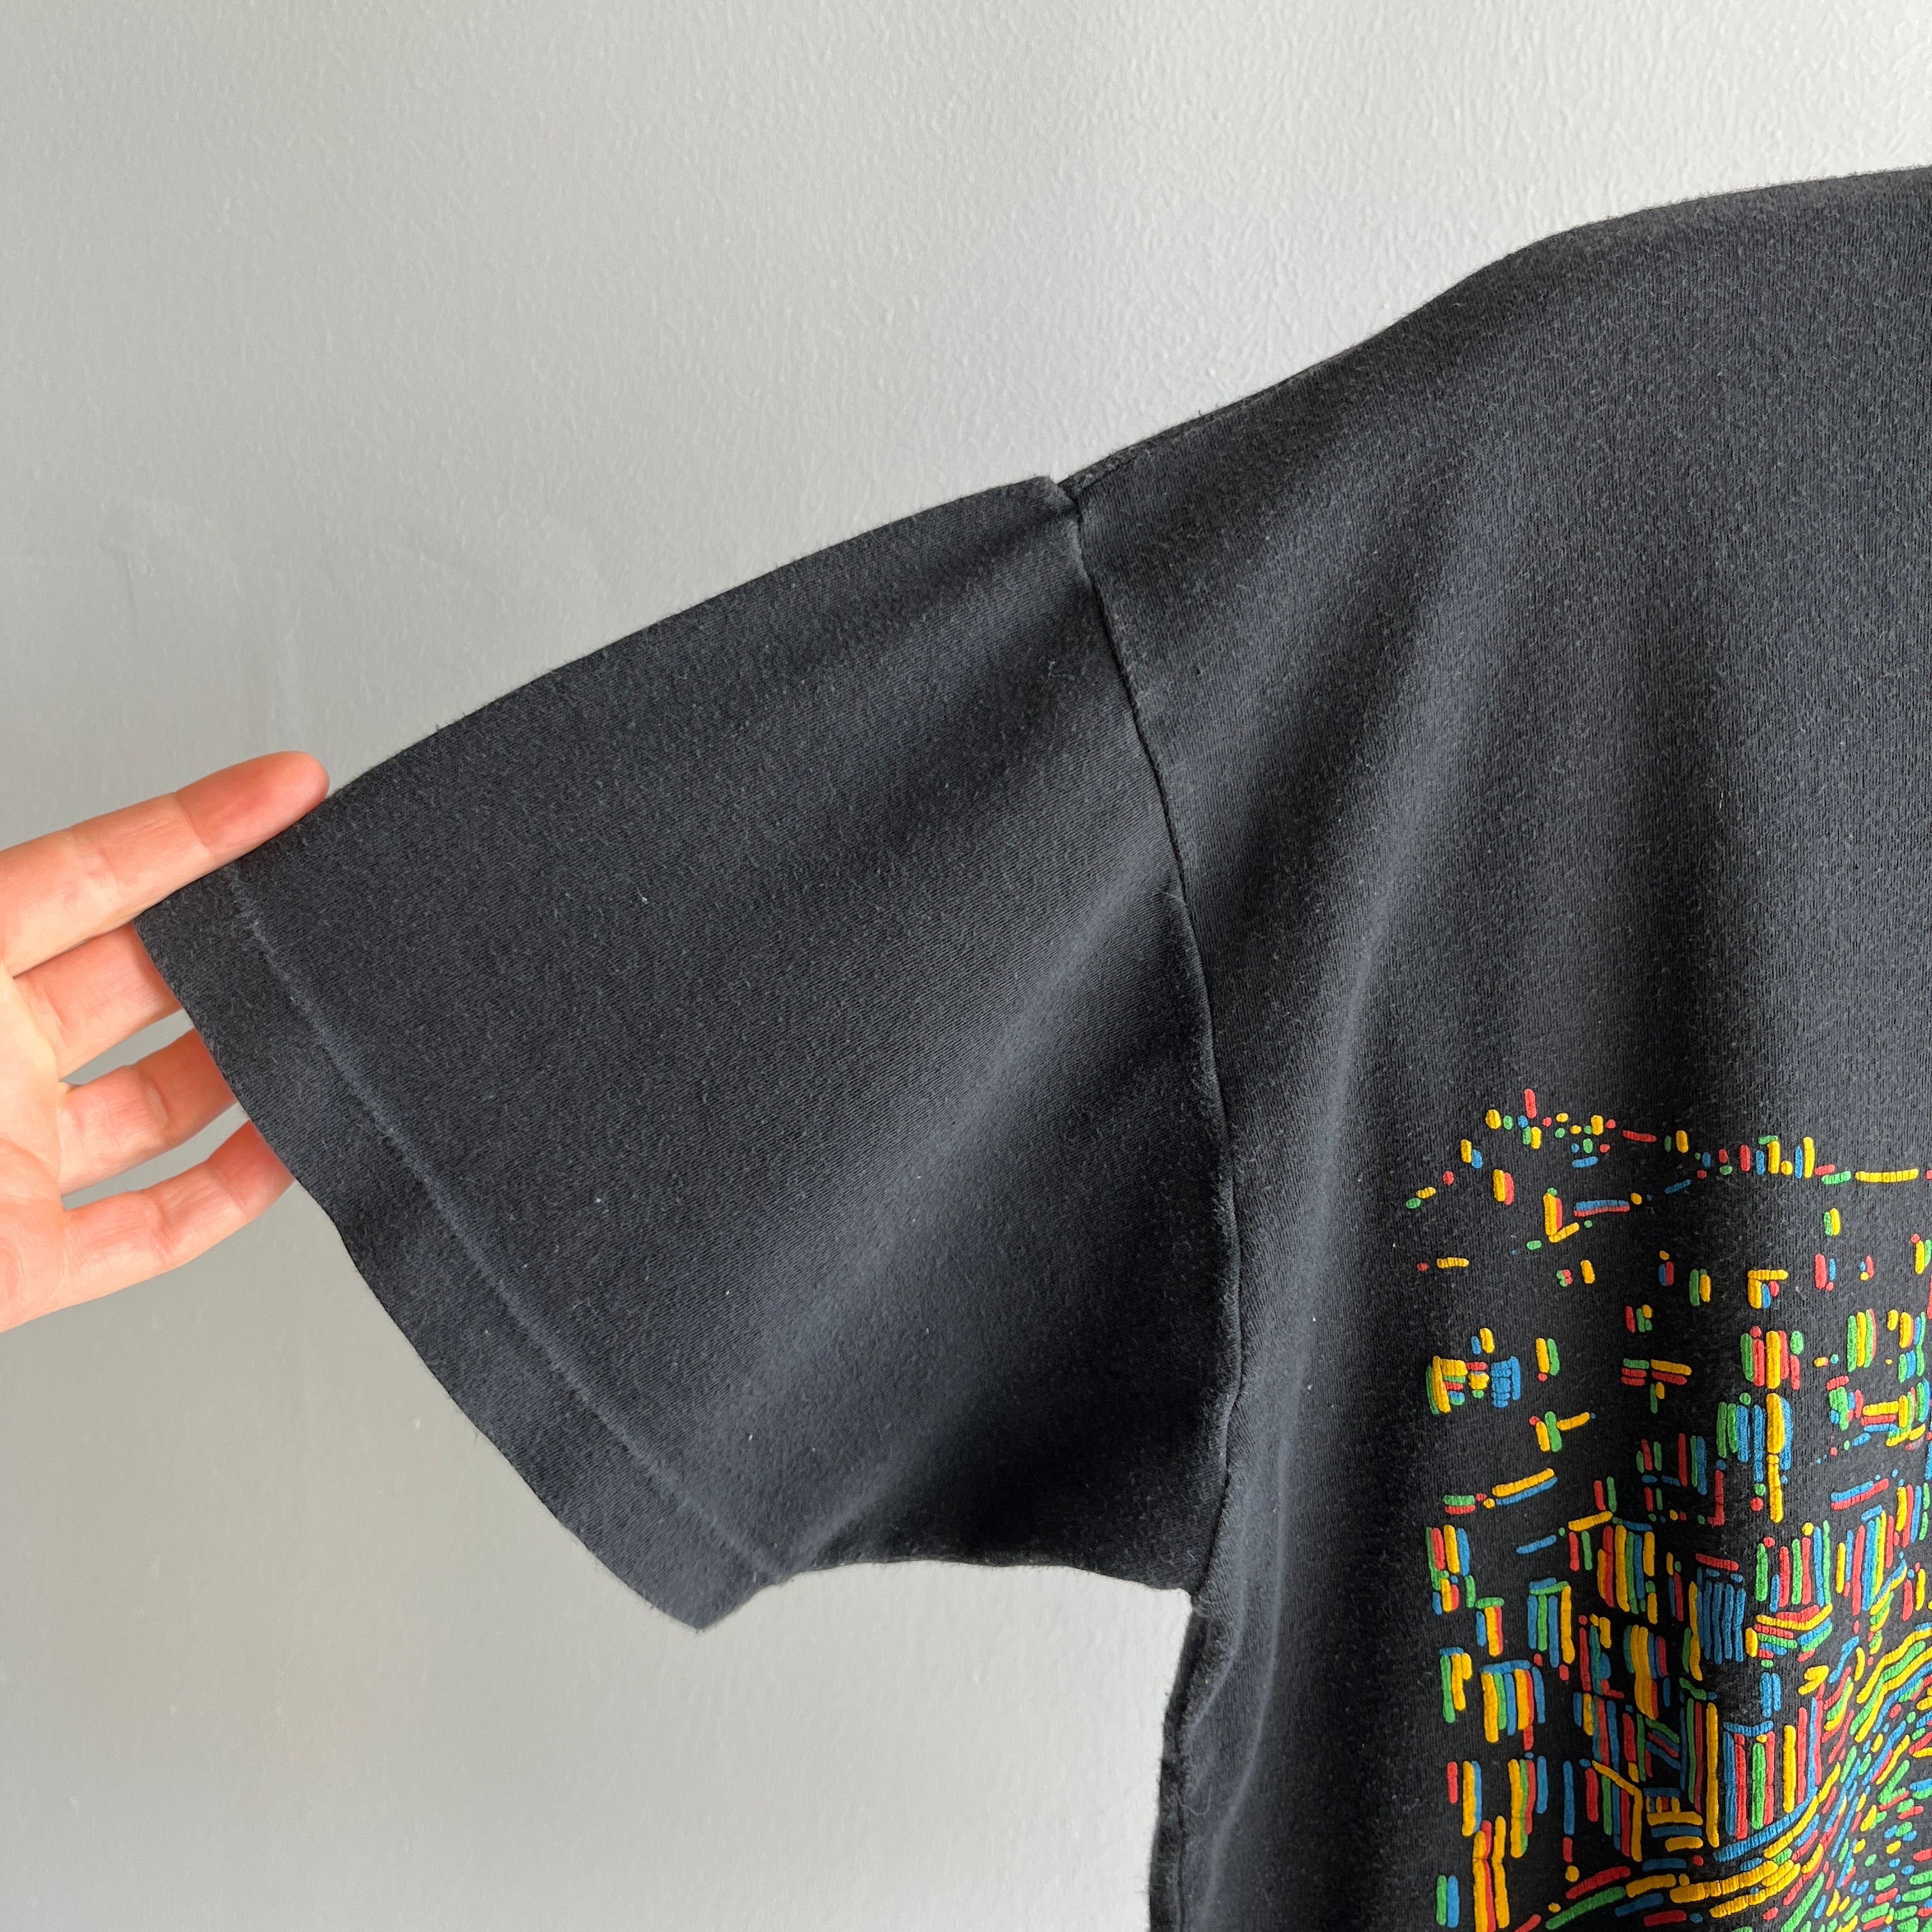 1990s Hong Kong Tourist T-Shirt - Dim Sum Brand - Soft Jersey Knit